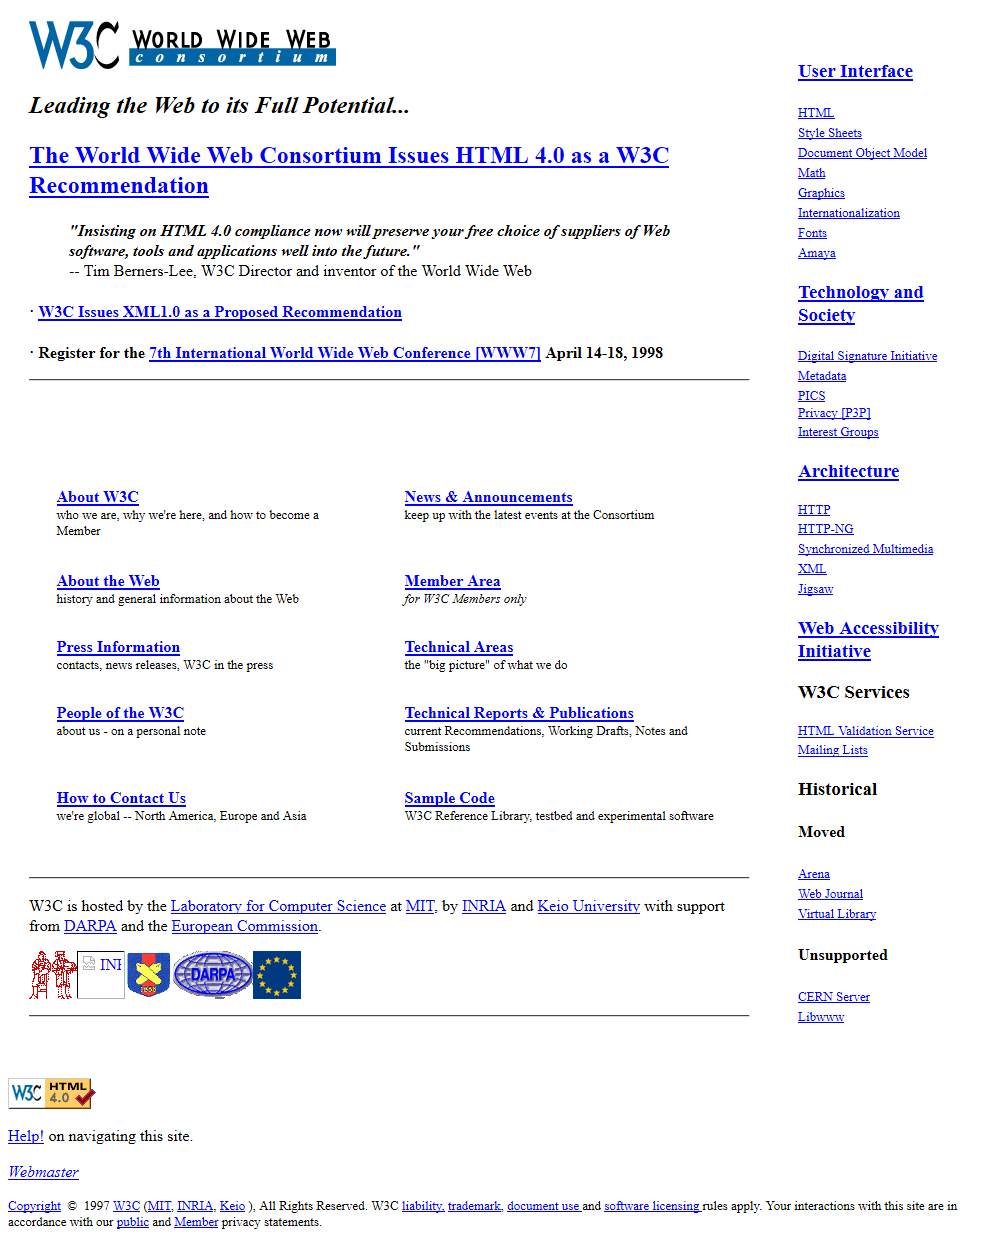 W3C.org in 1998